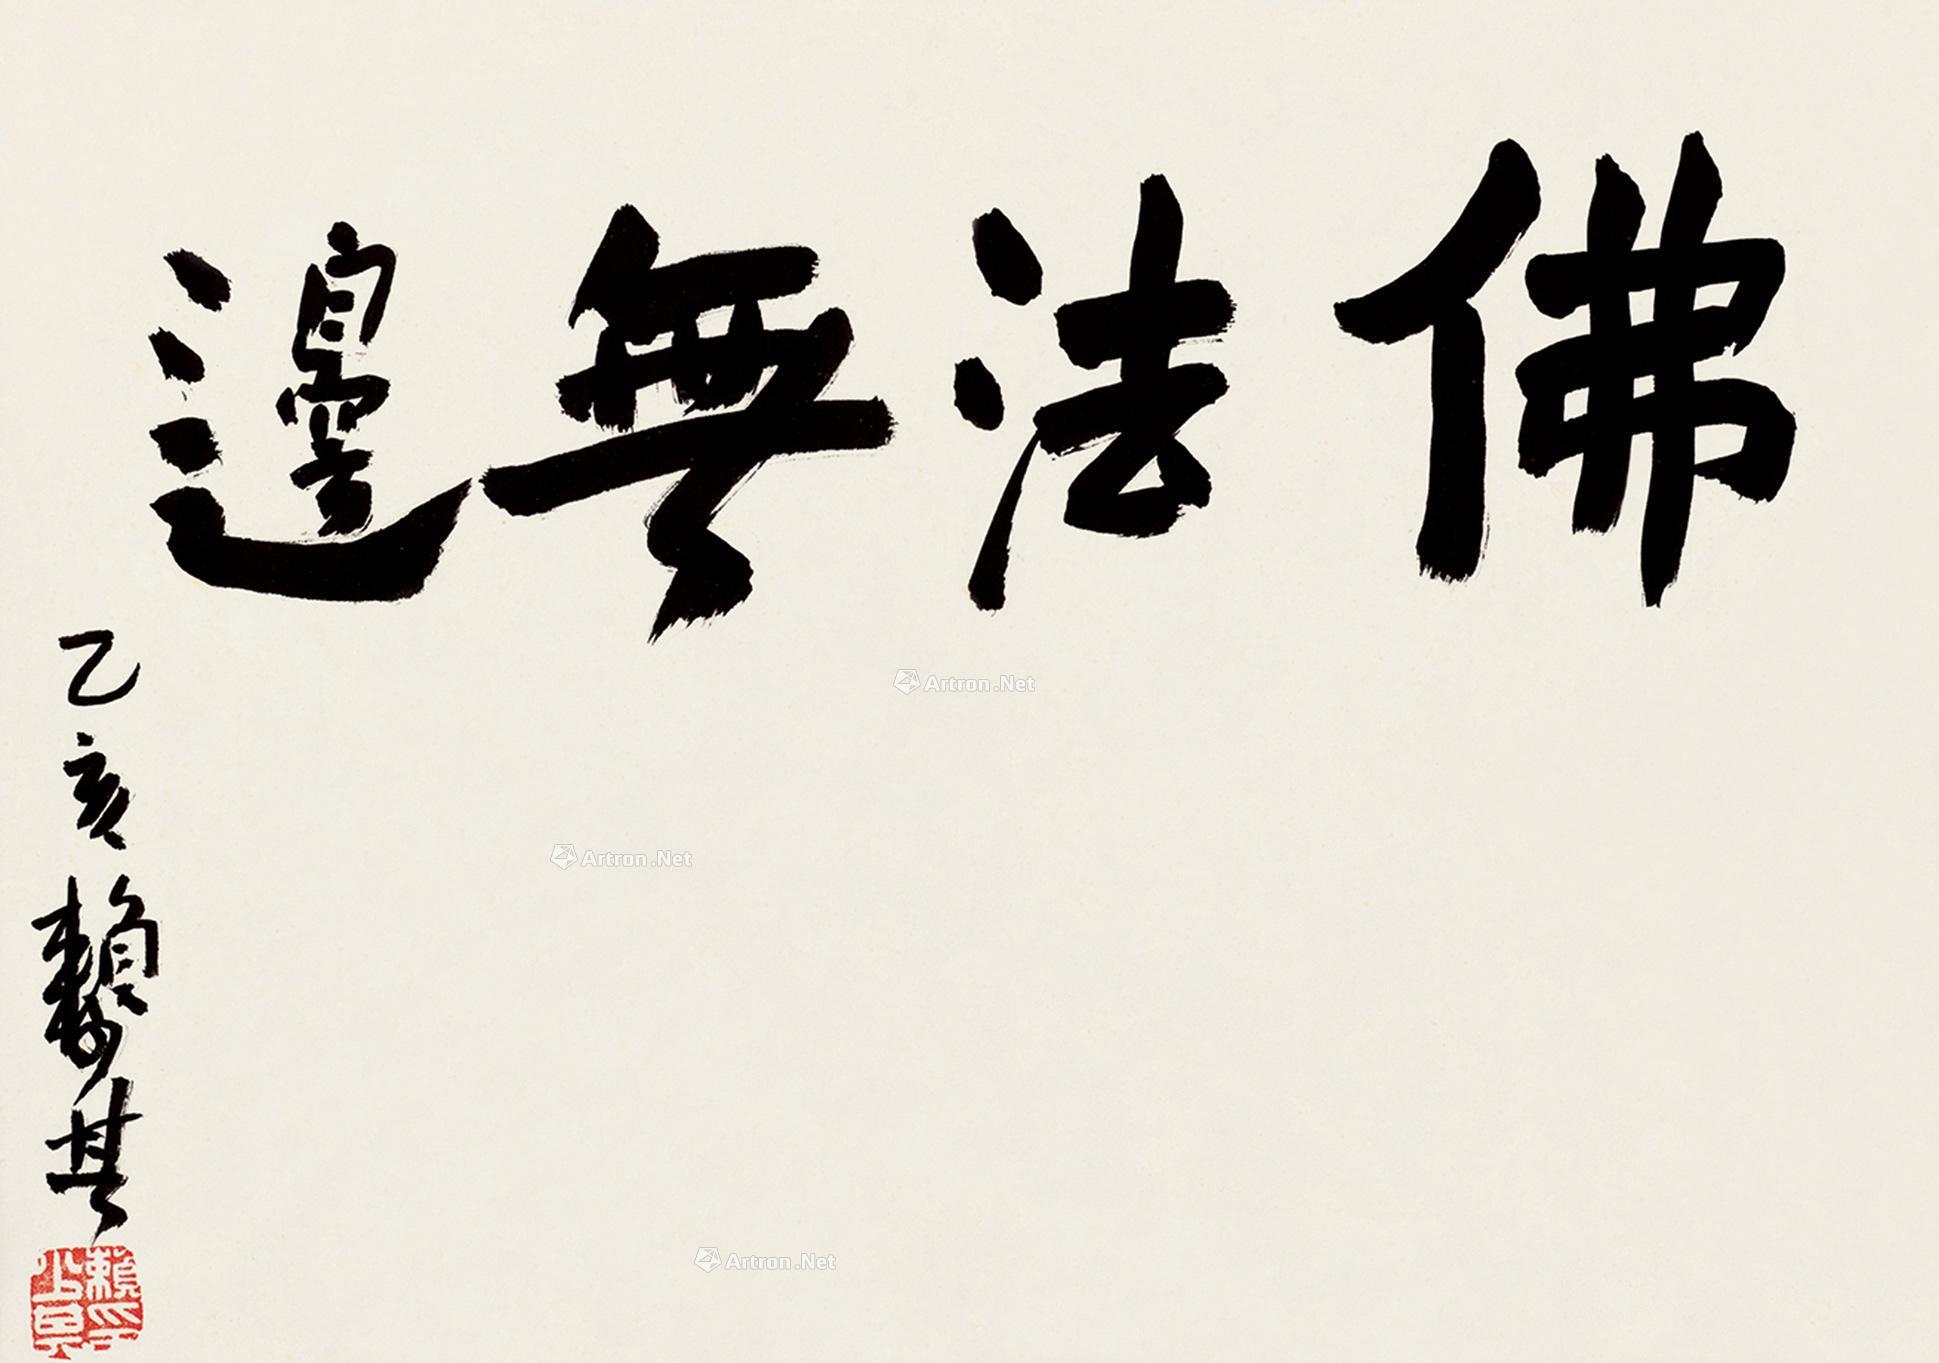 0576 乙亥(1995)年作 行书佛法无边 横批 纸本